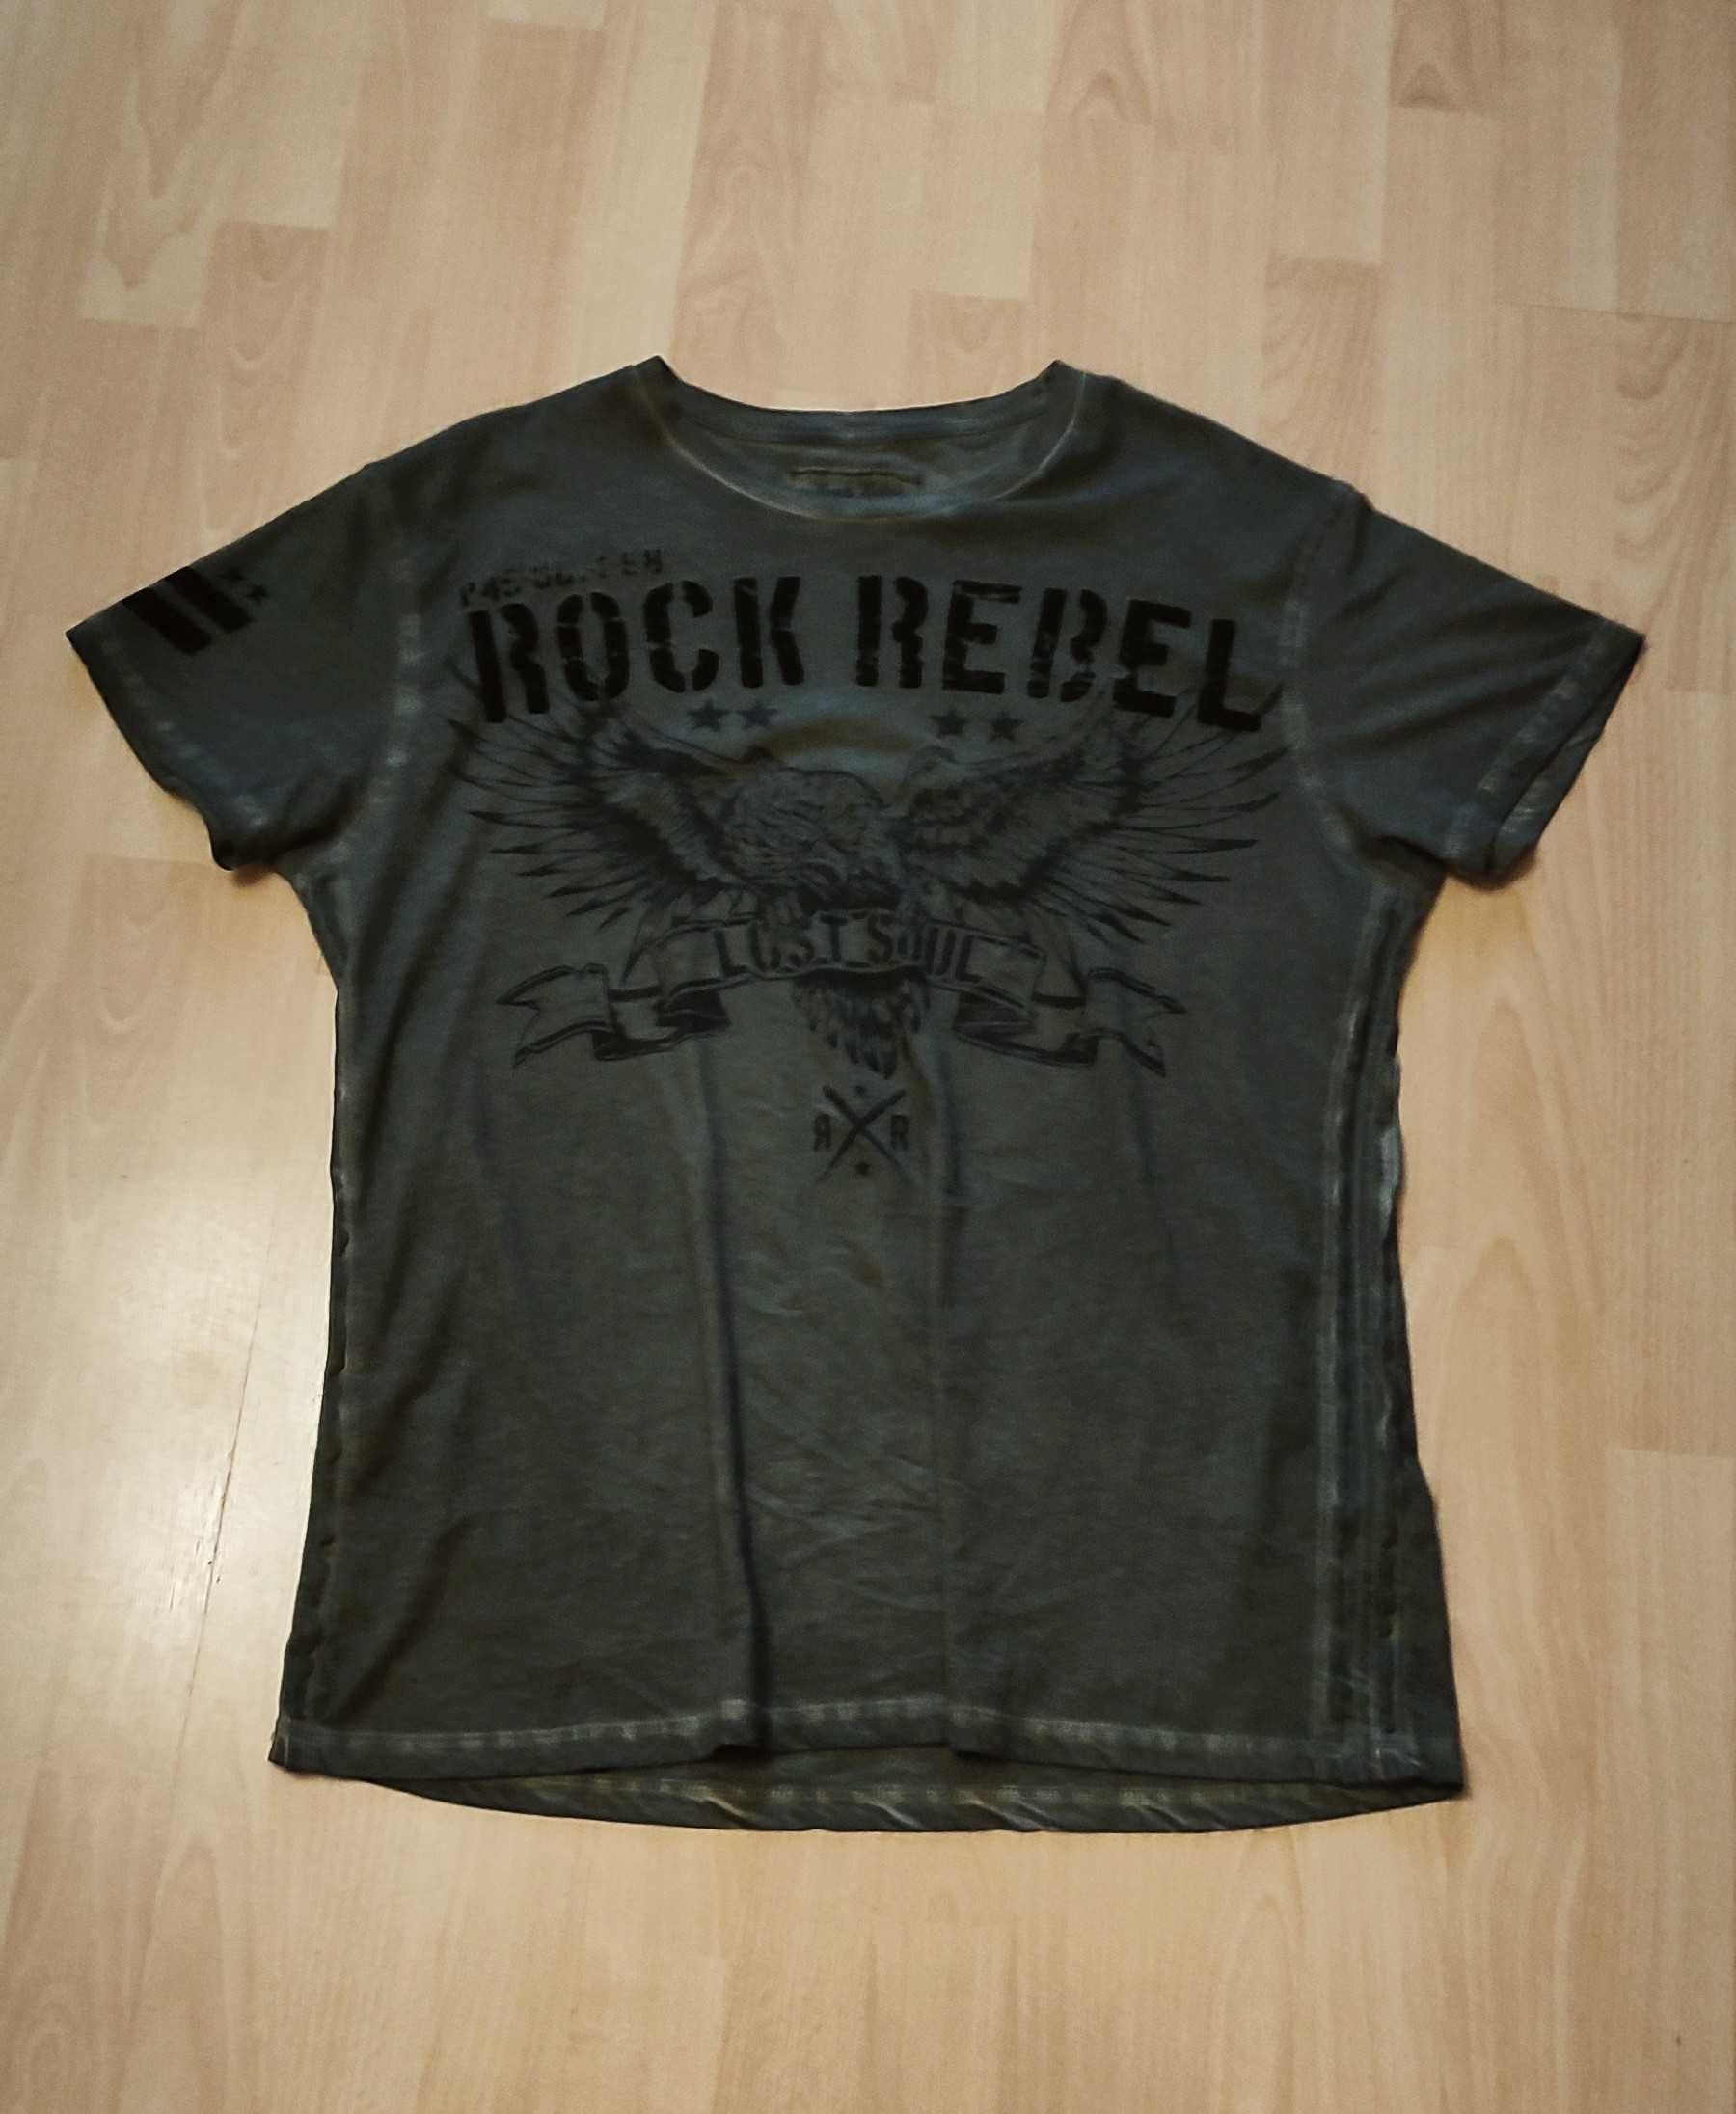 Vintage rock rebel tshirt